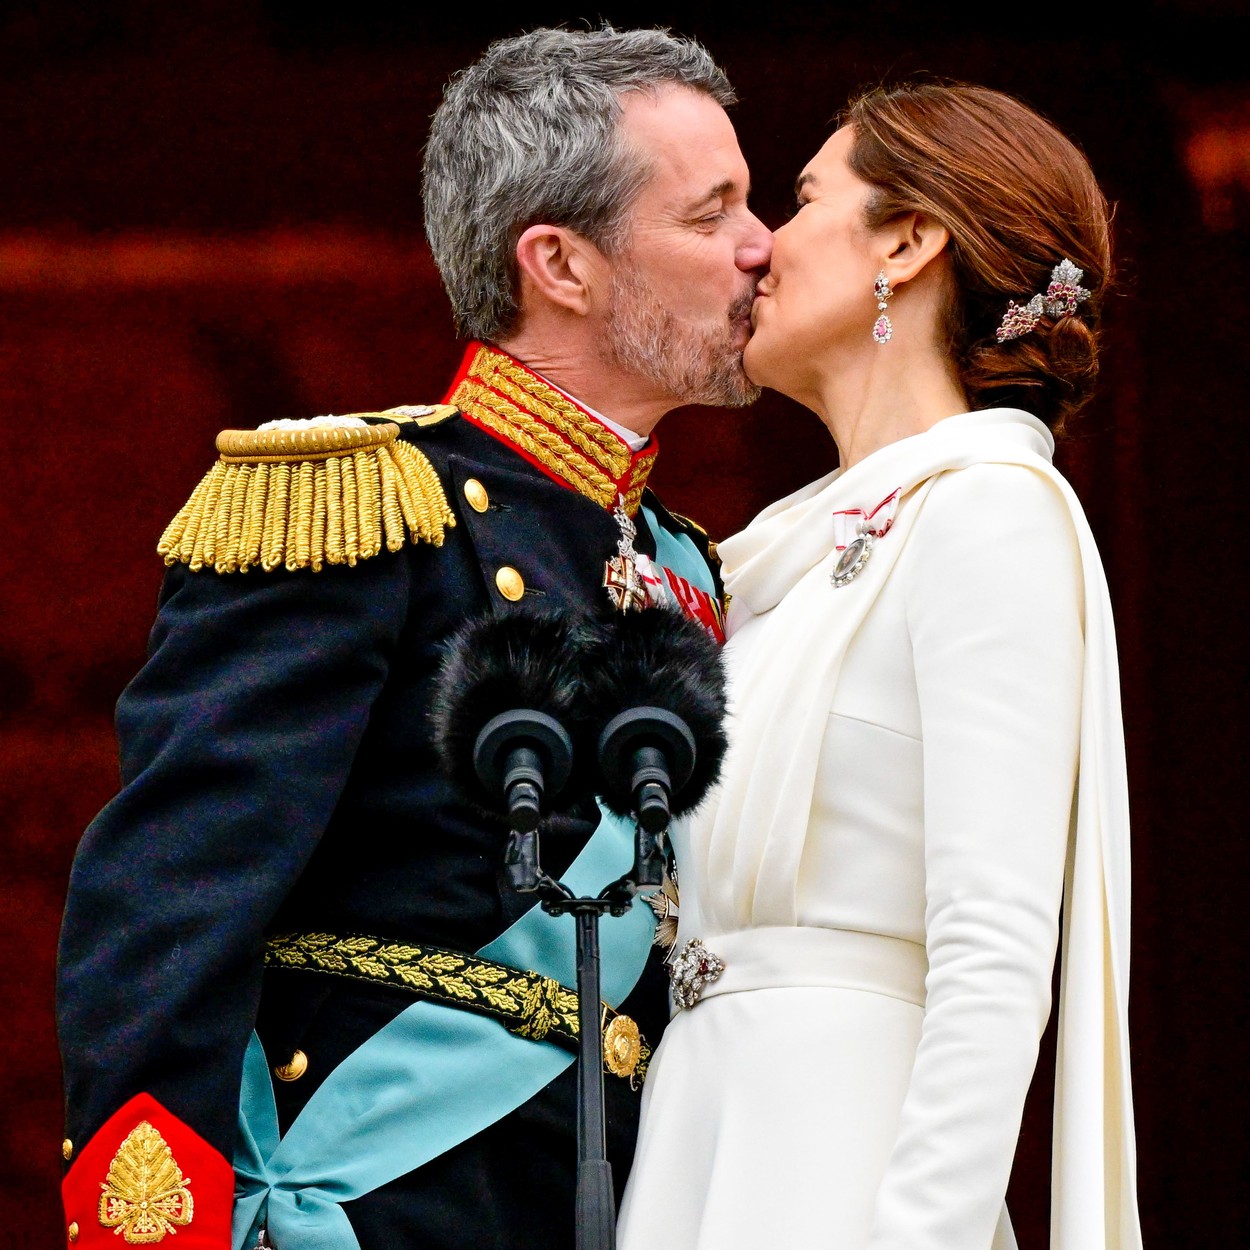 Regele Frederik al X-lea își sărută soția la balconul palatului regal